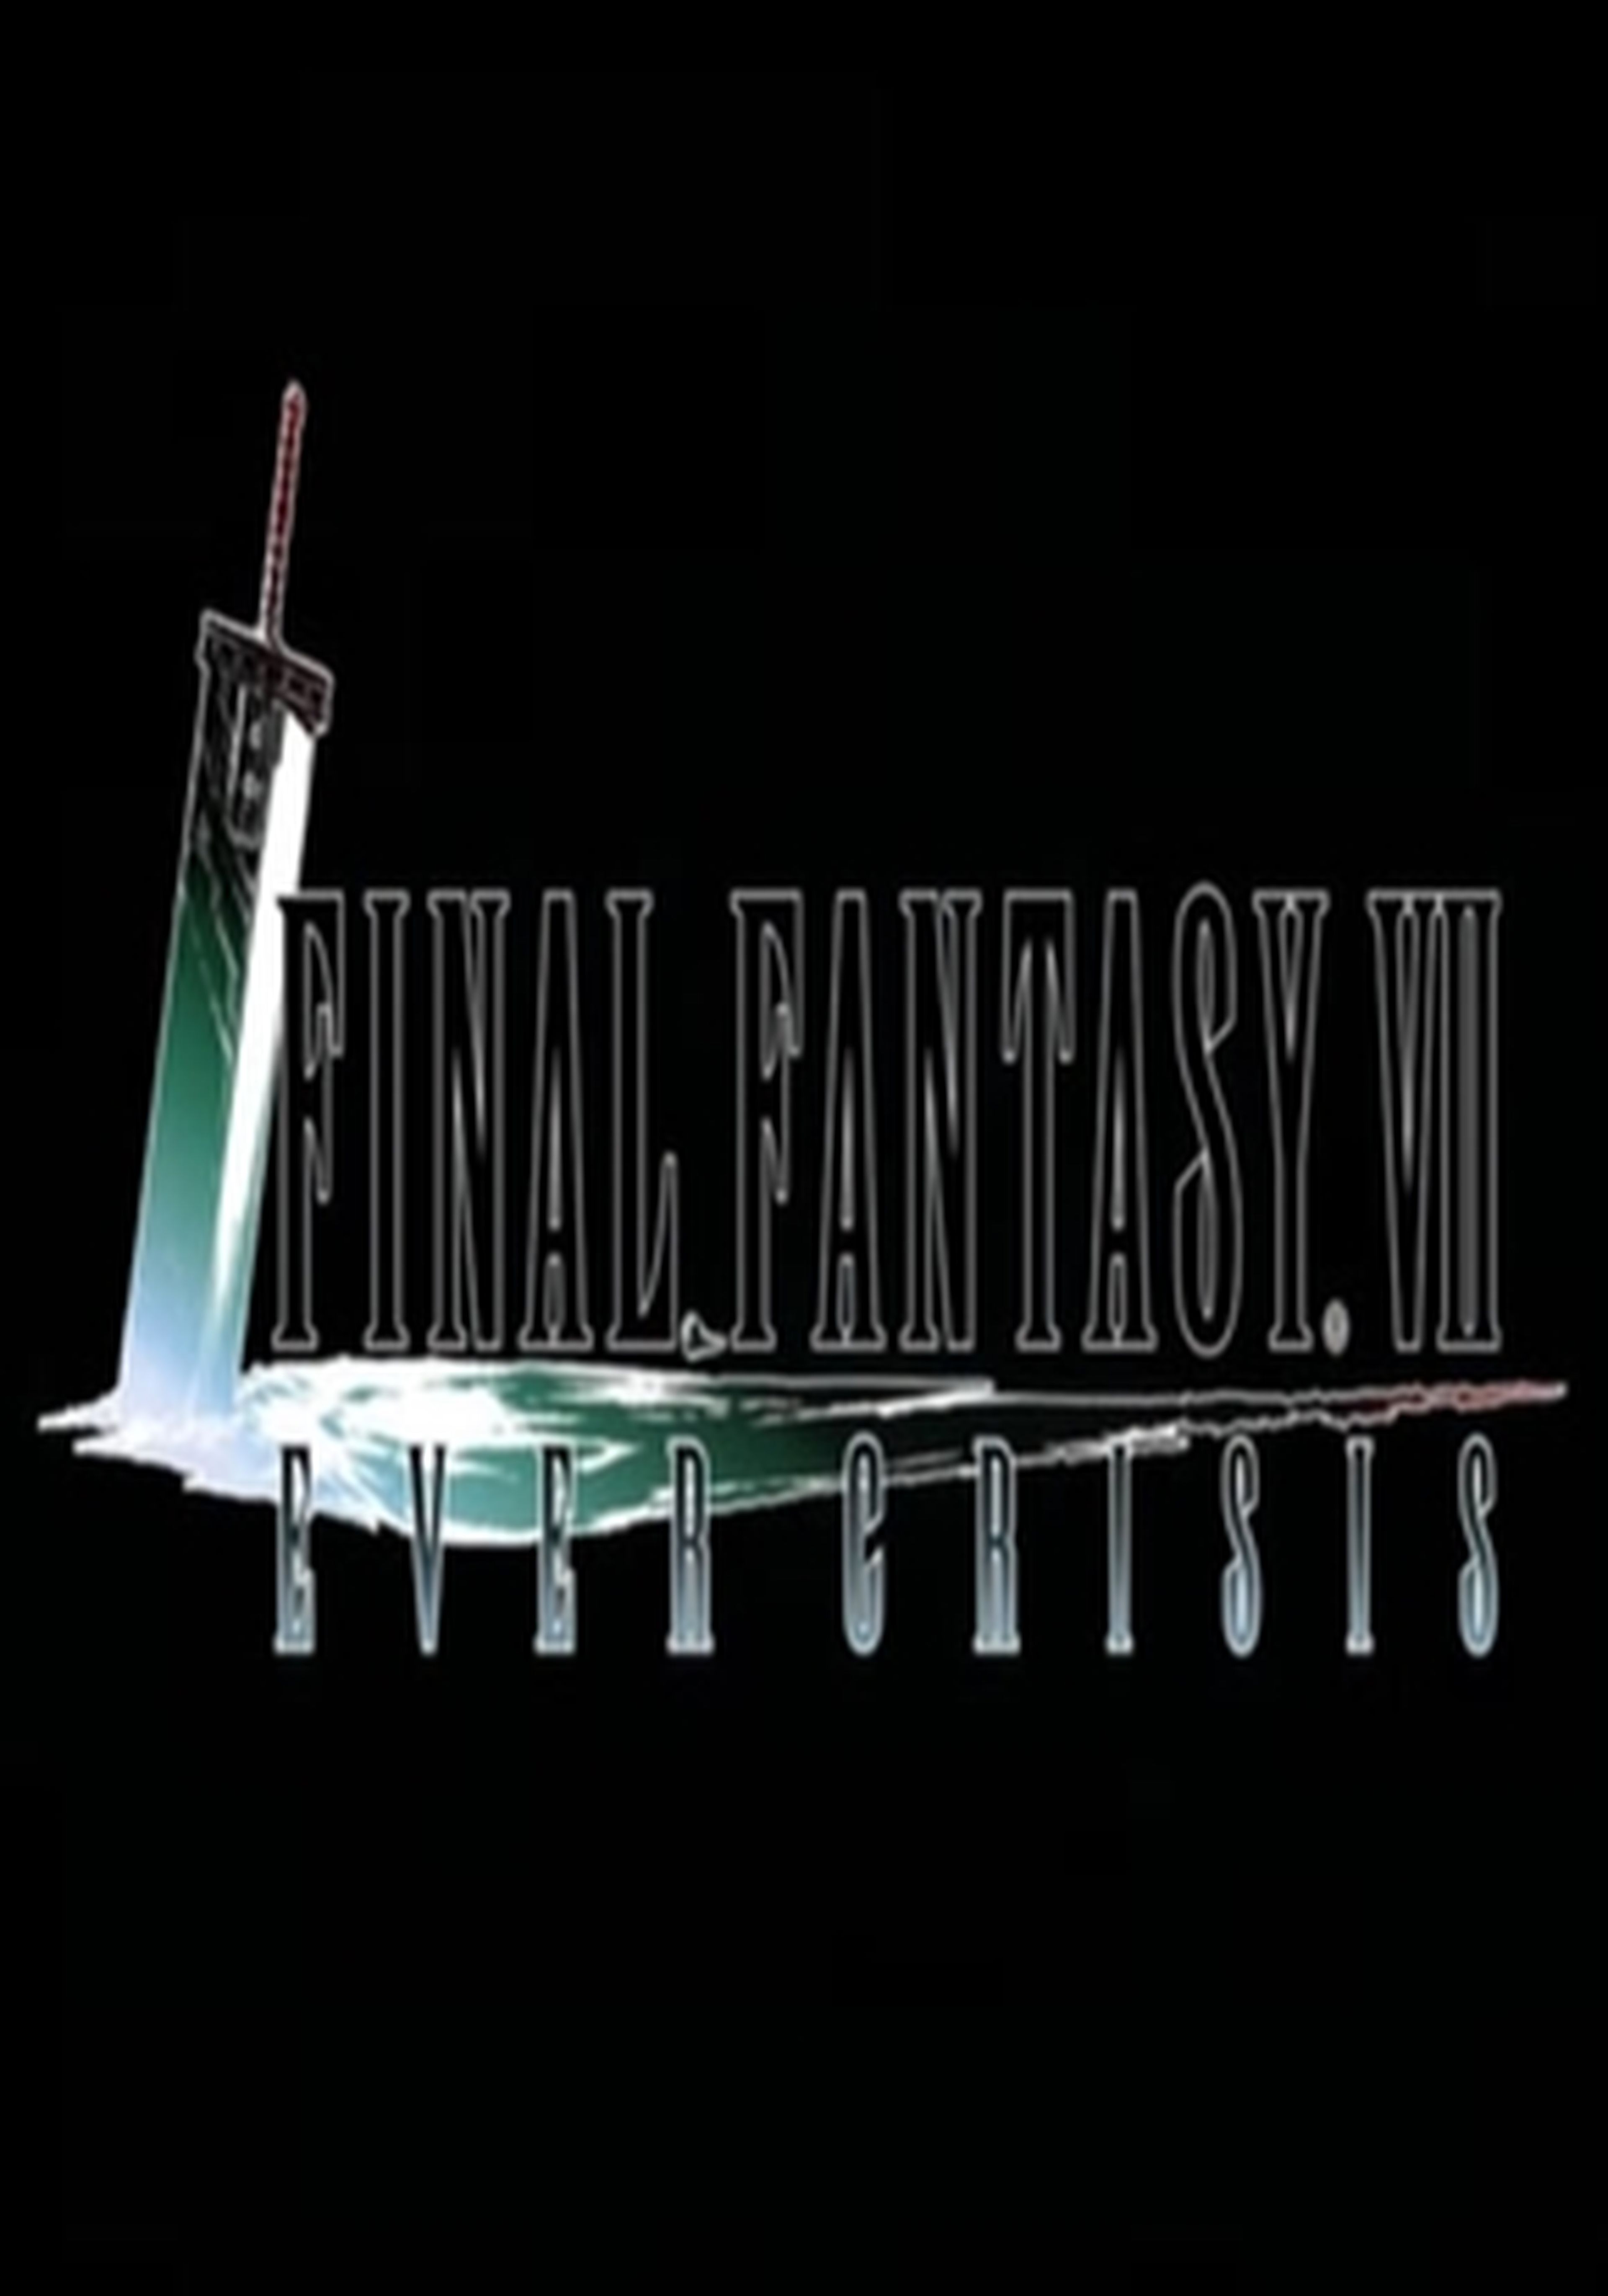 Final Fantasy VII Ever Crisis revela sus requisitos mínimos y